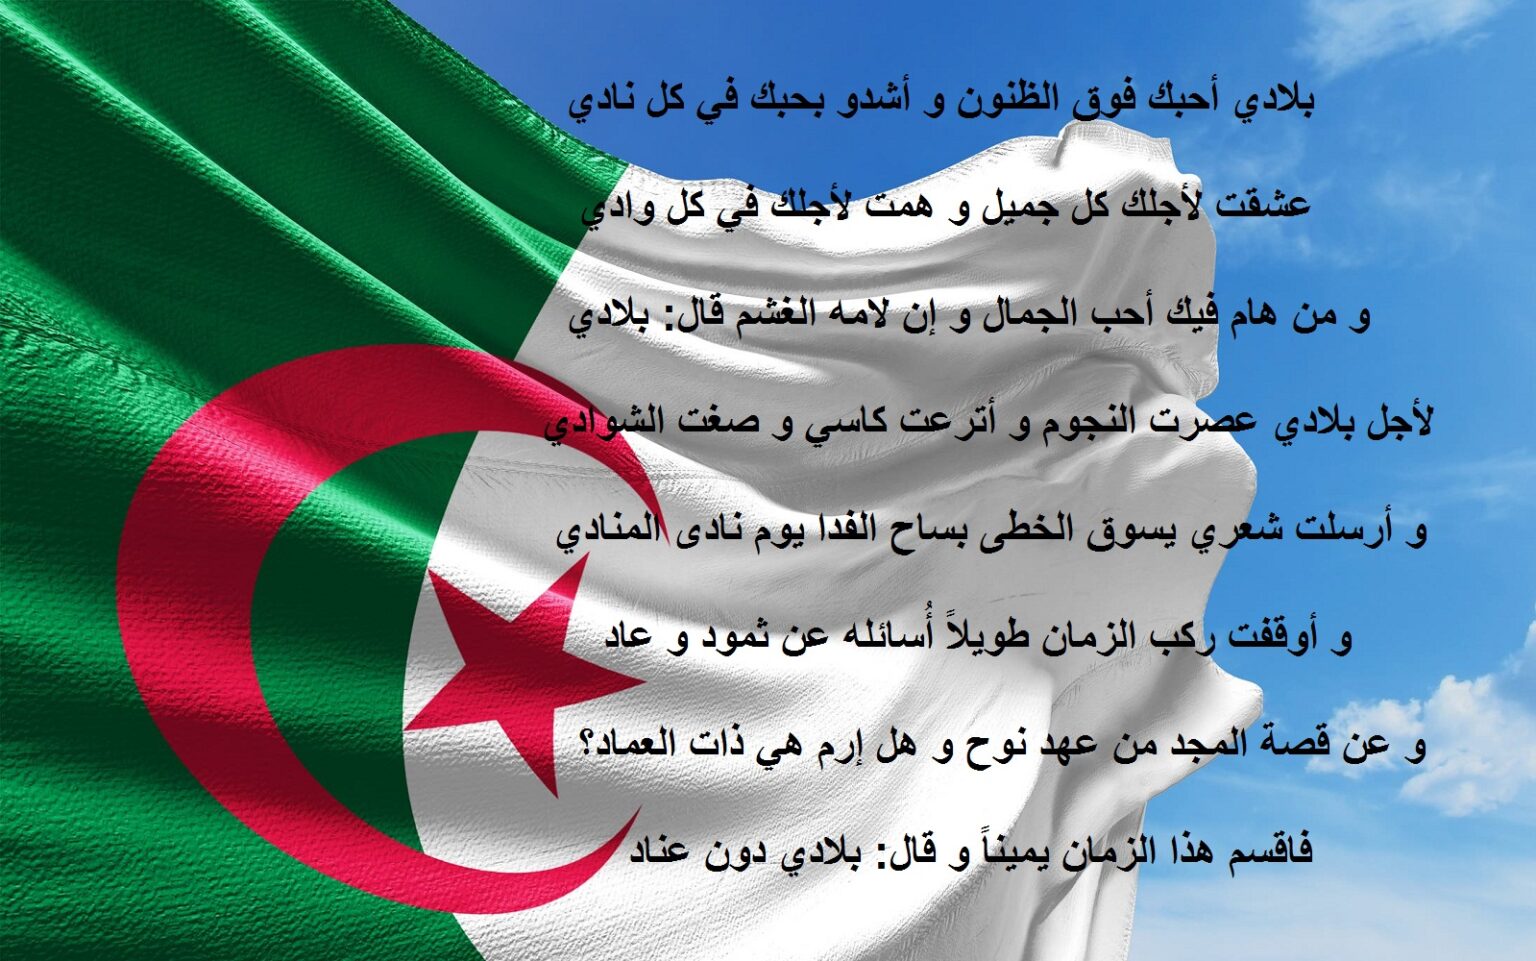 شعر عن الوطن الجزائر قصير جدا وأجمل أشعار حب الوطن الجزائري